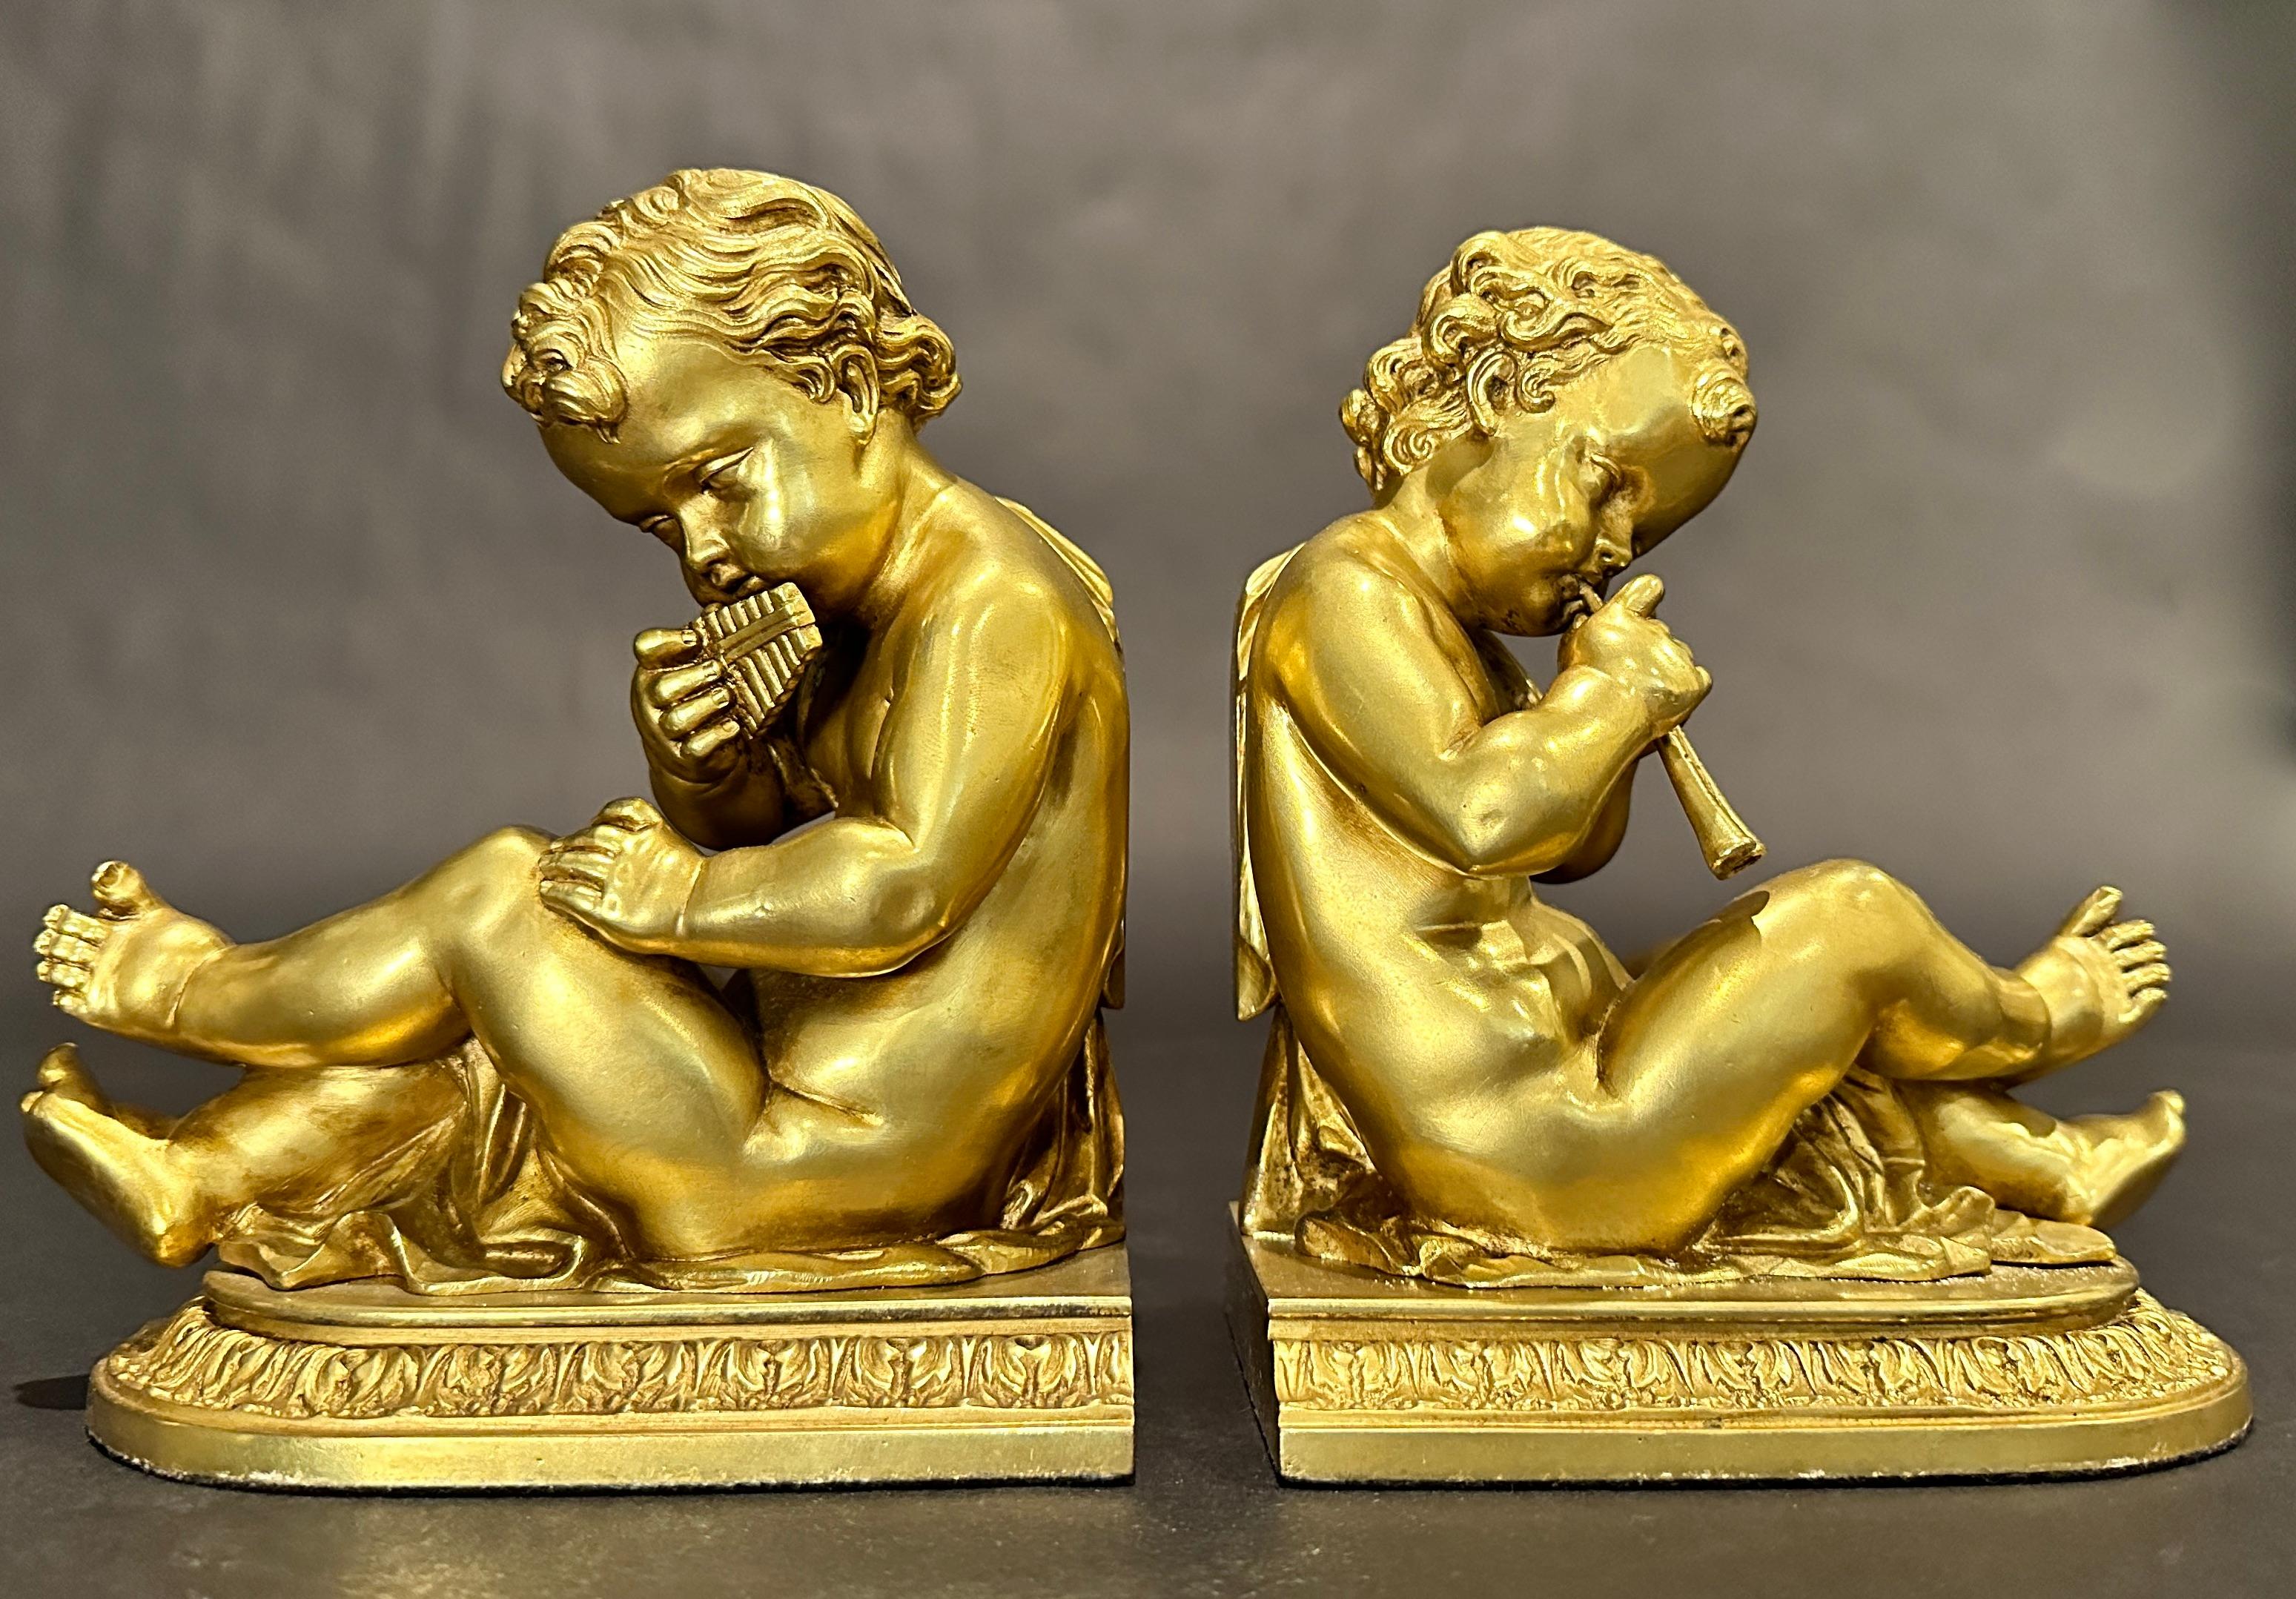 Paire de serre-livres anciens en bronze doré. Chacune représente un jeune enfant/putti jouant d'un instrument de musique. L'un est un syrinx (d'après l'instrument conçu par le dieu Pan), l'autre un Aulos (flûte à anche double), assis sur une